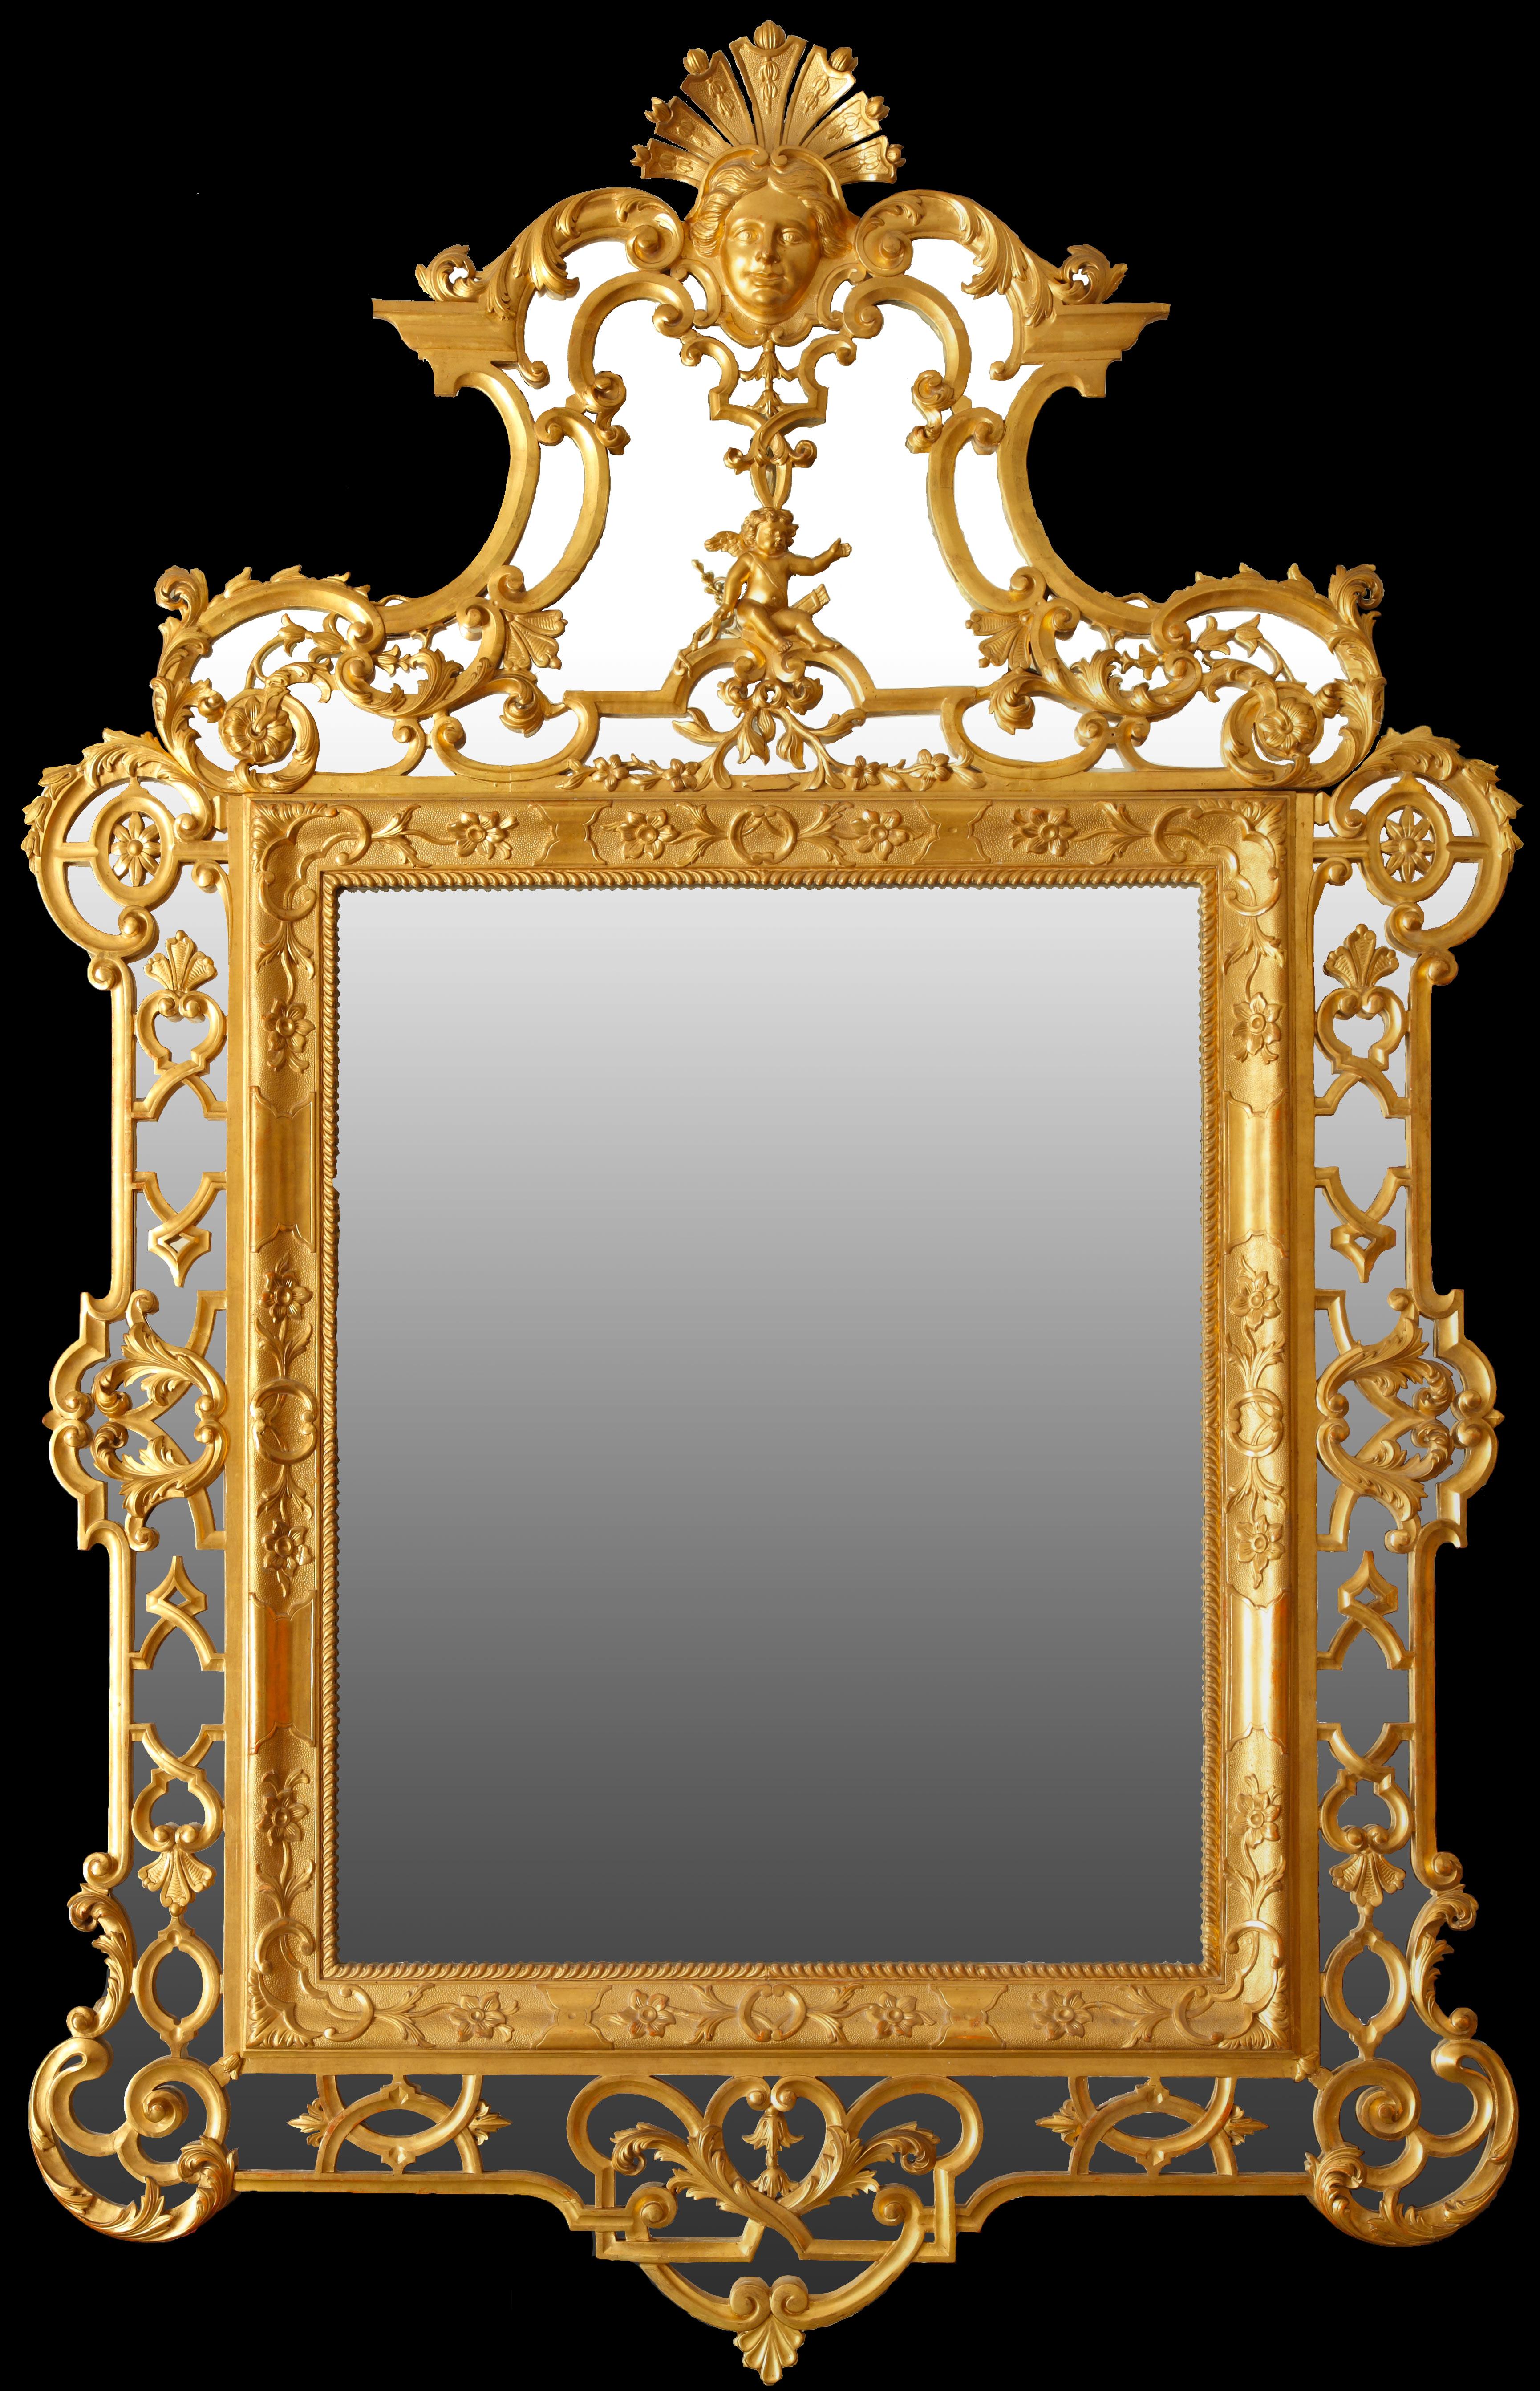 Ein wichtiger geschnitzter Spiegel aus Goldholz mit einem reichen Rahmen, der mit Arabesken verziert ist. Der Deckel ist reich mit einem Puttenmotiv verziert und wird von einer Maske auf einer ausgebreiteten Muschel überragt. Das Ganze üppig